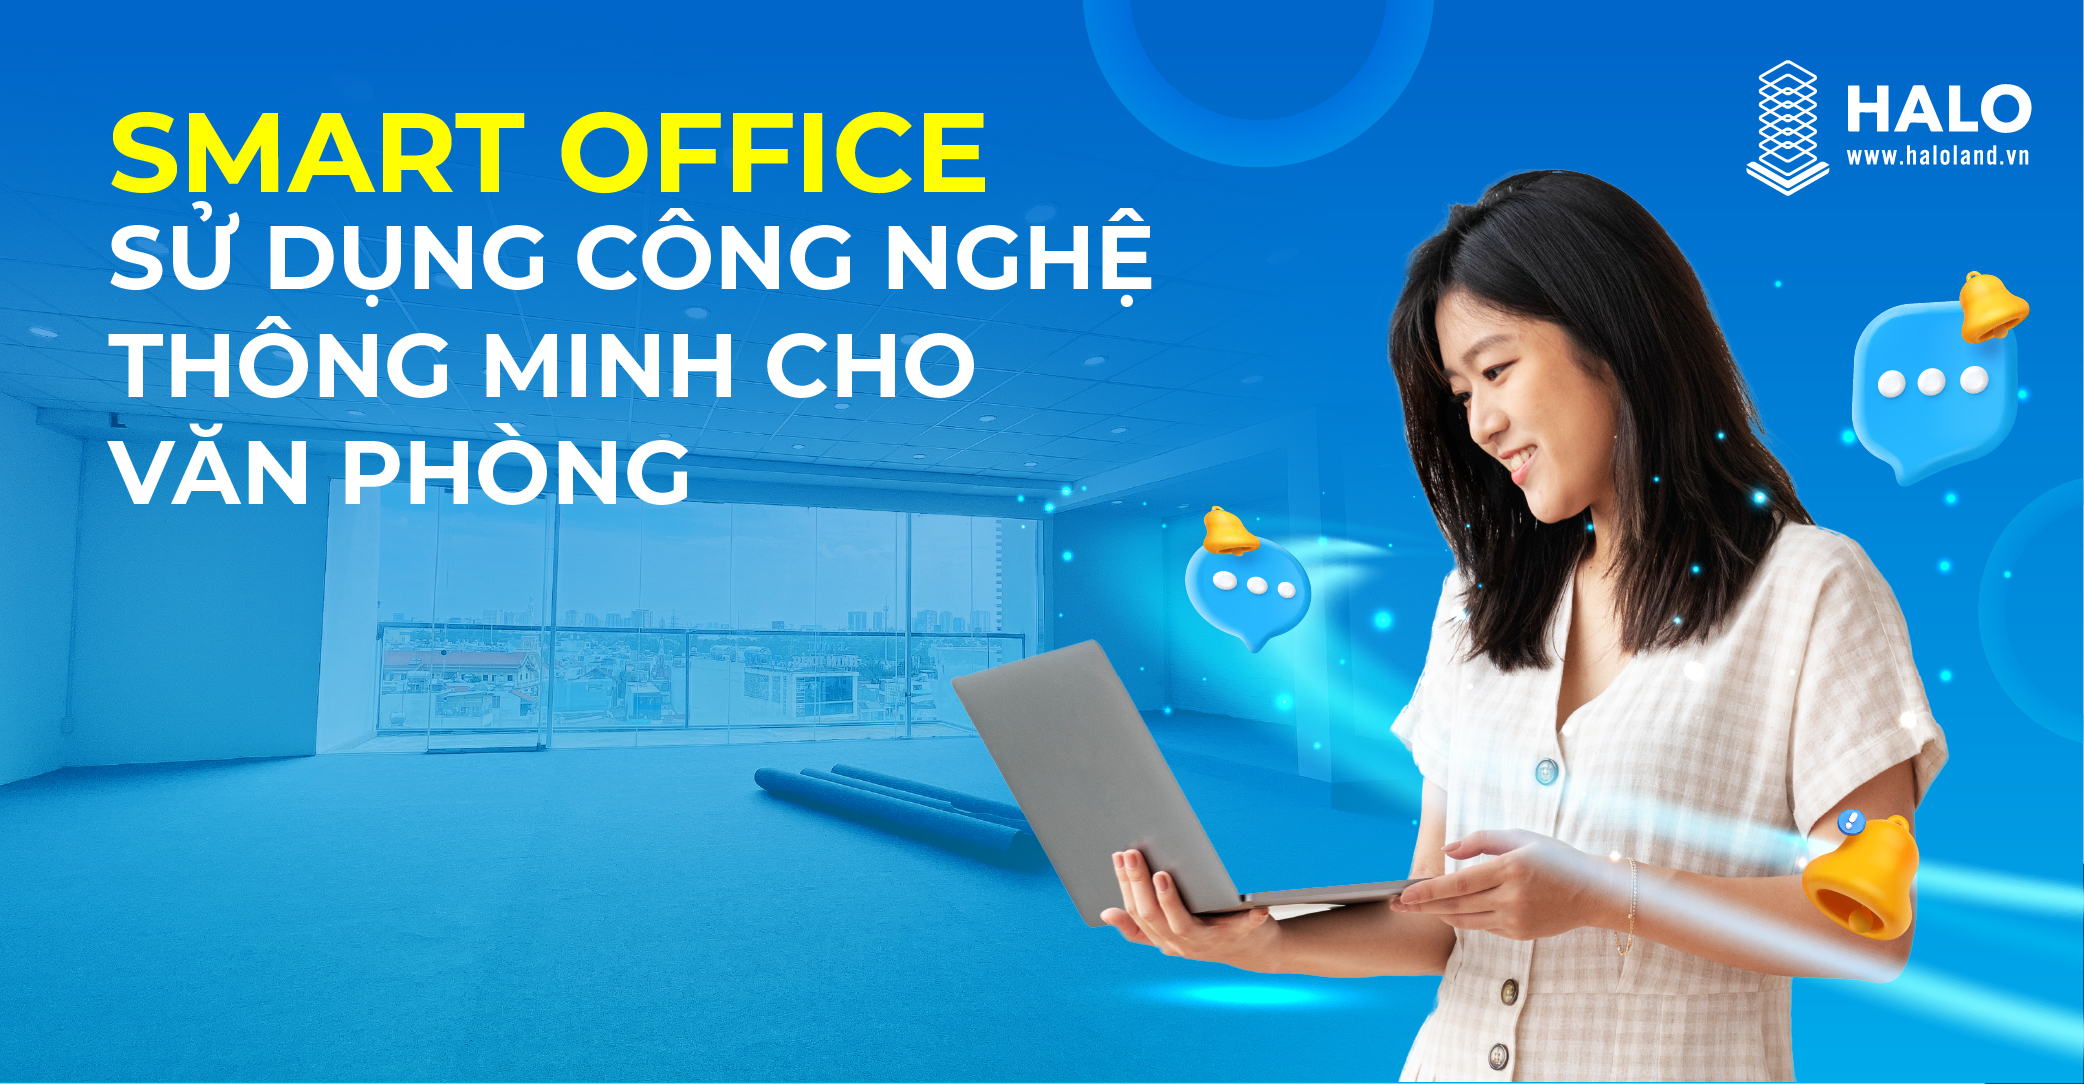 SMART OFFICE” – SỬ DỤNG CÔNG NGHỆ THÔNG MINH CHO VĂN PHÒNG - Văn Phòng cho  thuê Sài Gòn